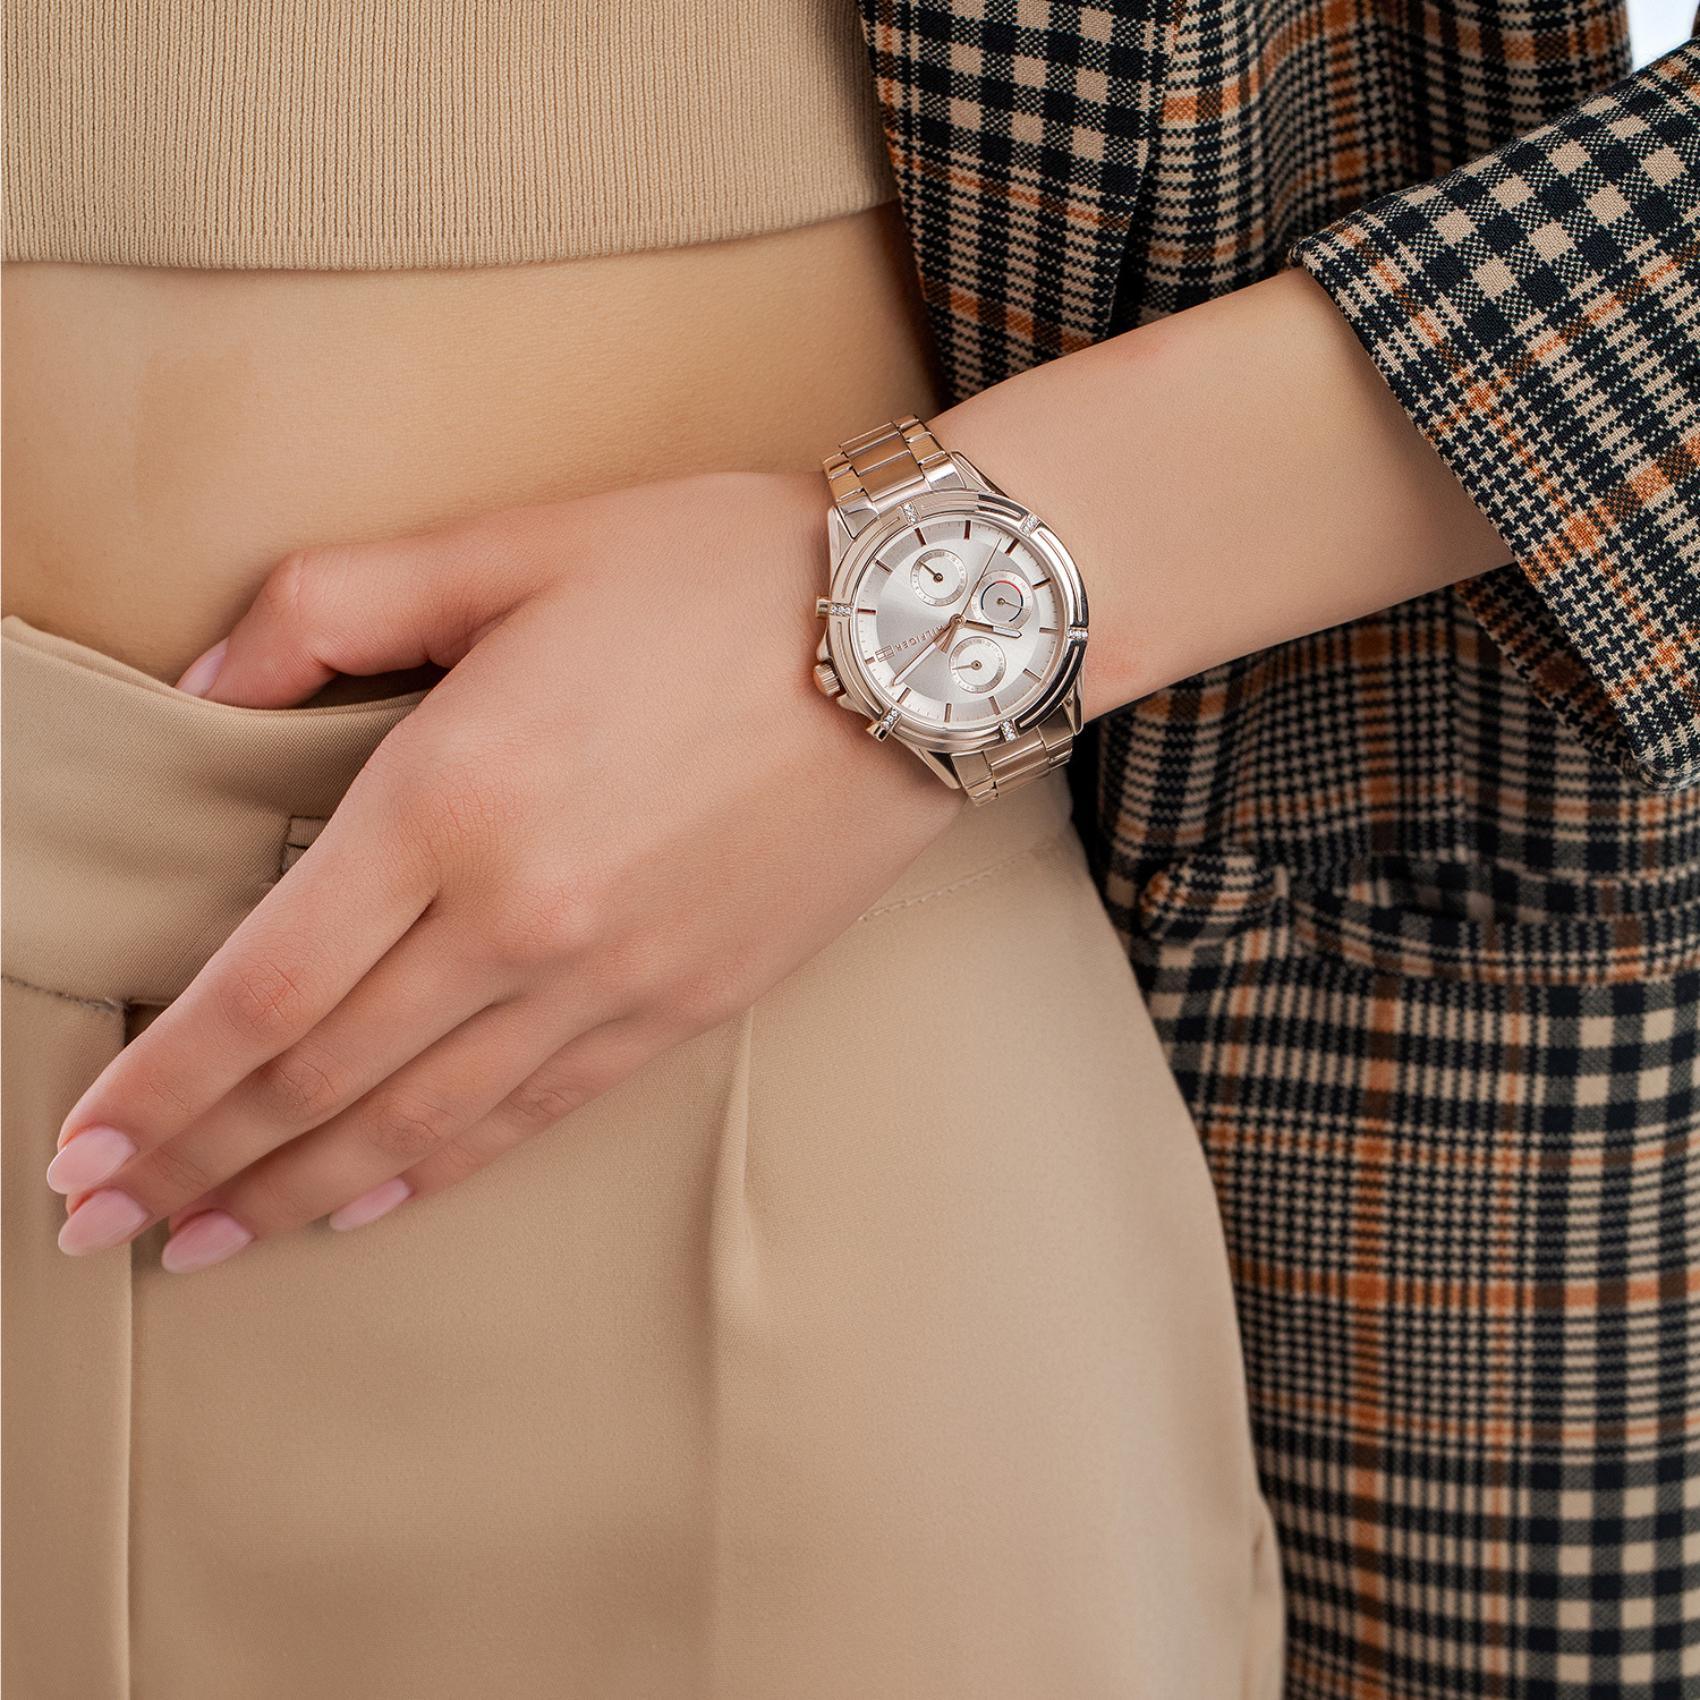 Γυναικείο ρολόι Tommy Hilfiger Ariana 1782505 με ροζ χρυσό ατσάλινο μπρασελέ και ροζ χρυσό καντράν διαμέτρου 38mm με ημέρα και ημερομηνία.